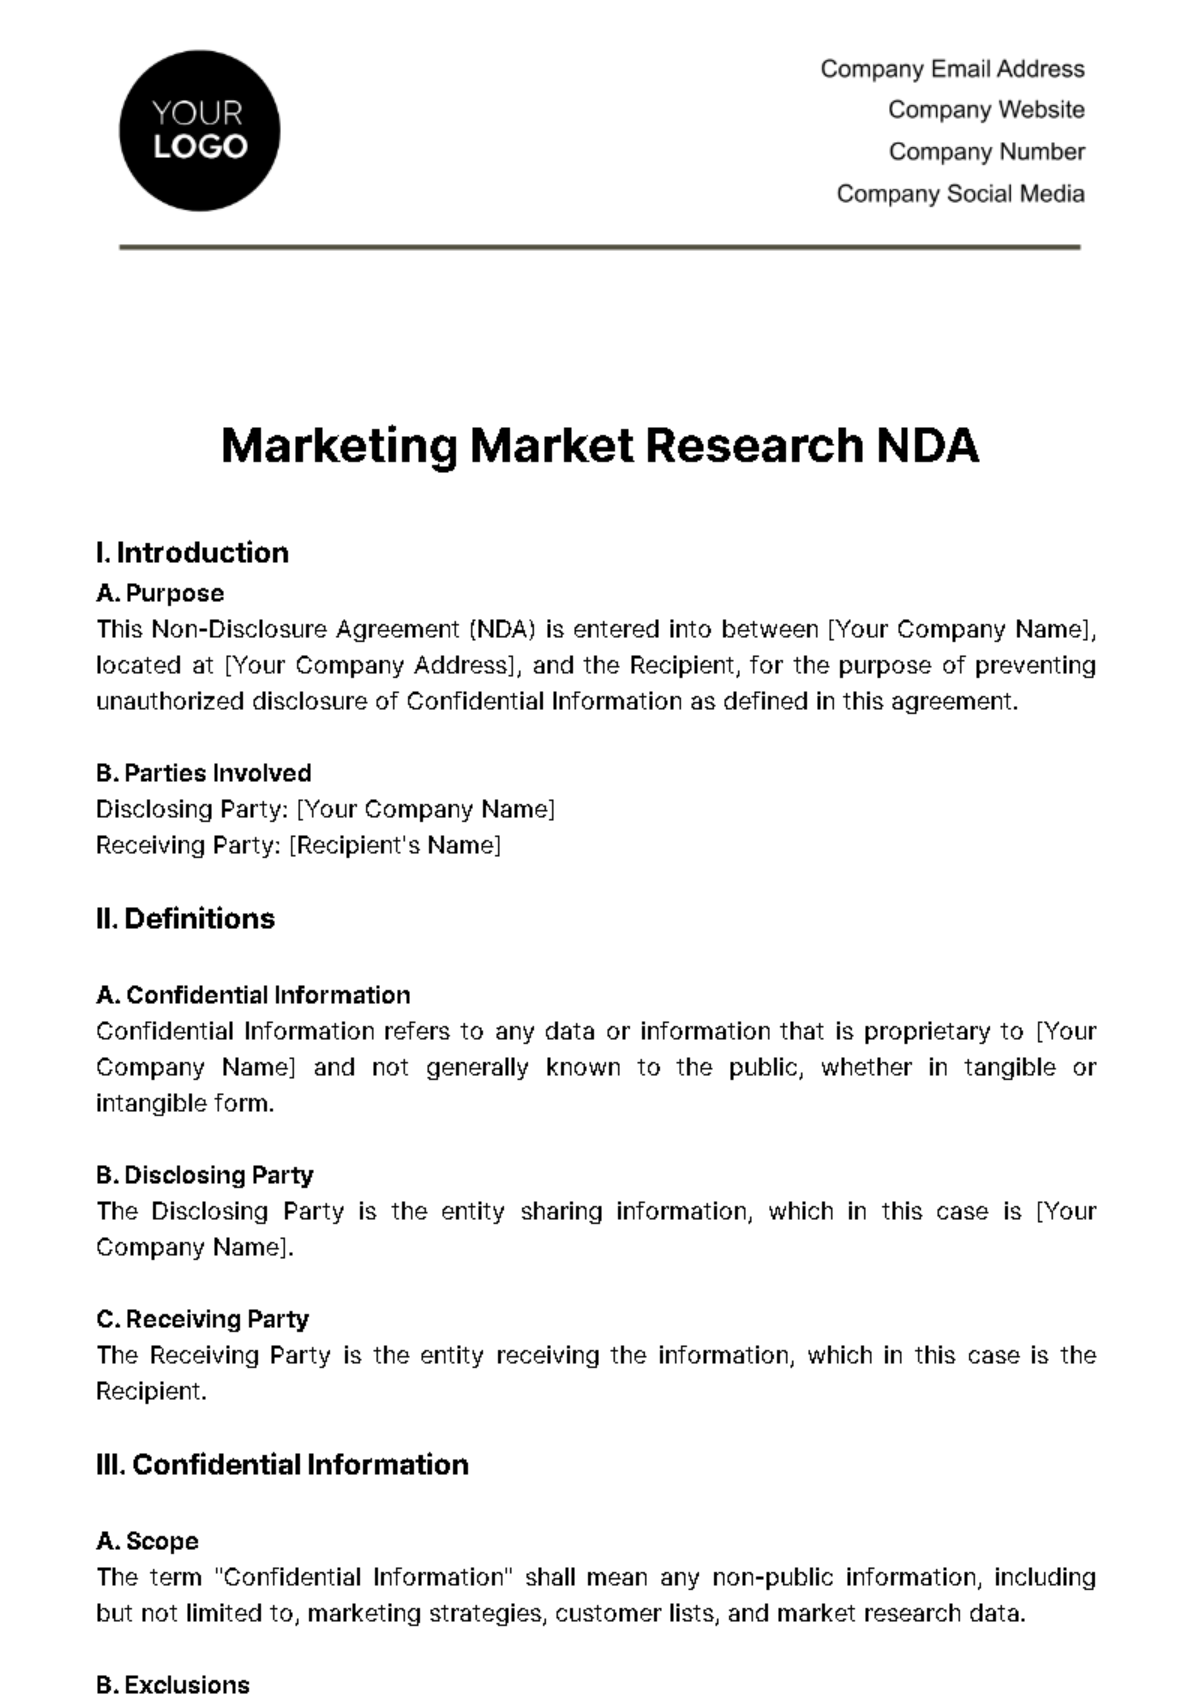 Free Marketing Market Research NDA Template